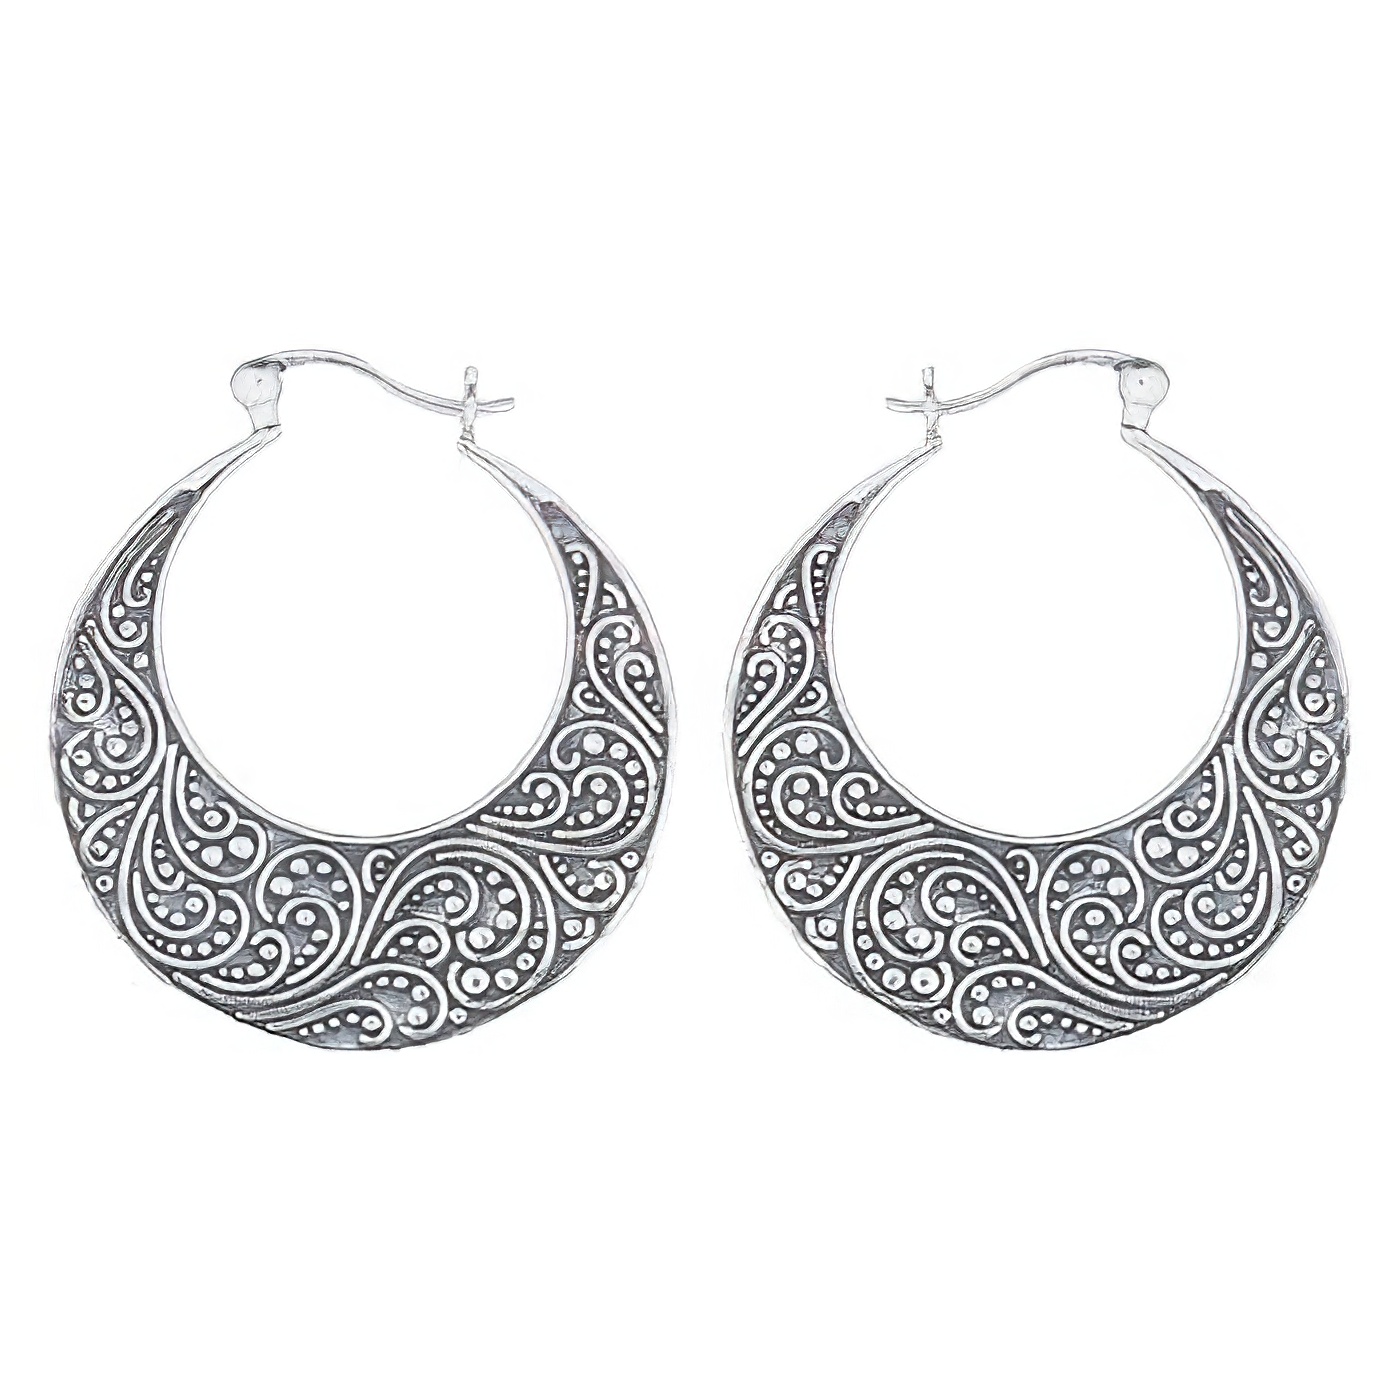 Stunning Filigree Hoop 925 Sterling Silver Earrings by BeYindi 